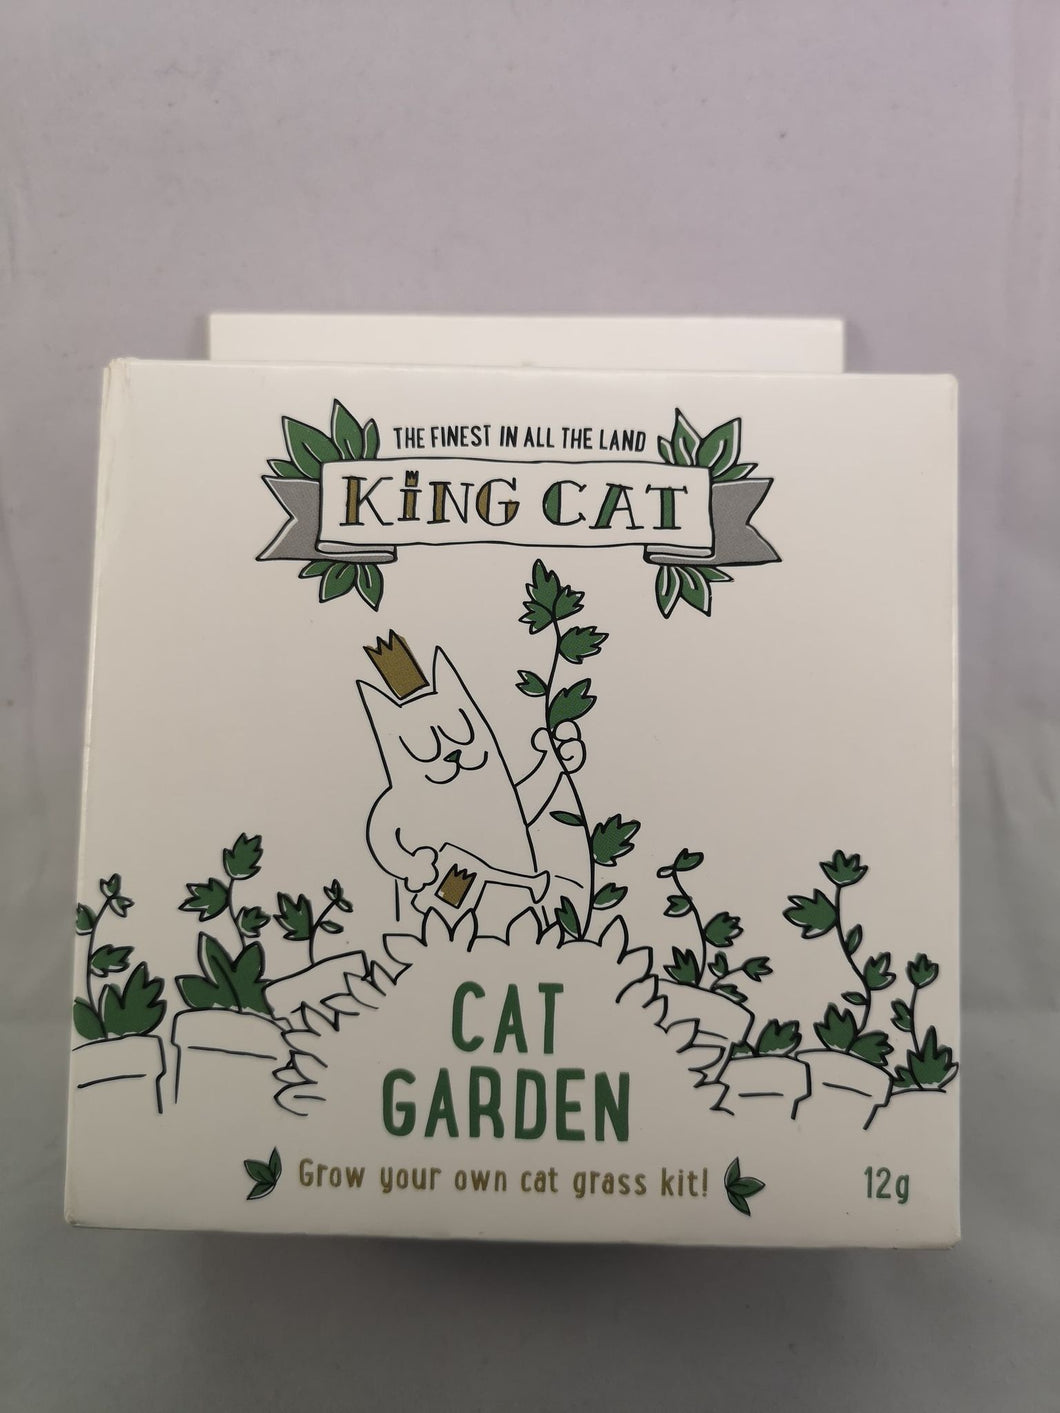 King Catnip GYO Cat Garden